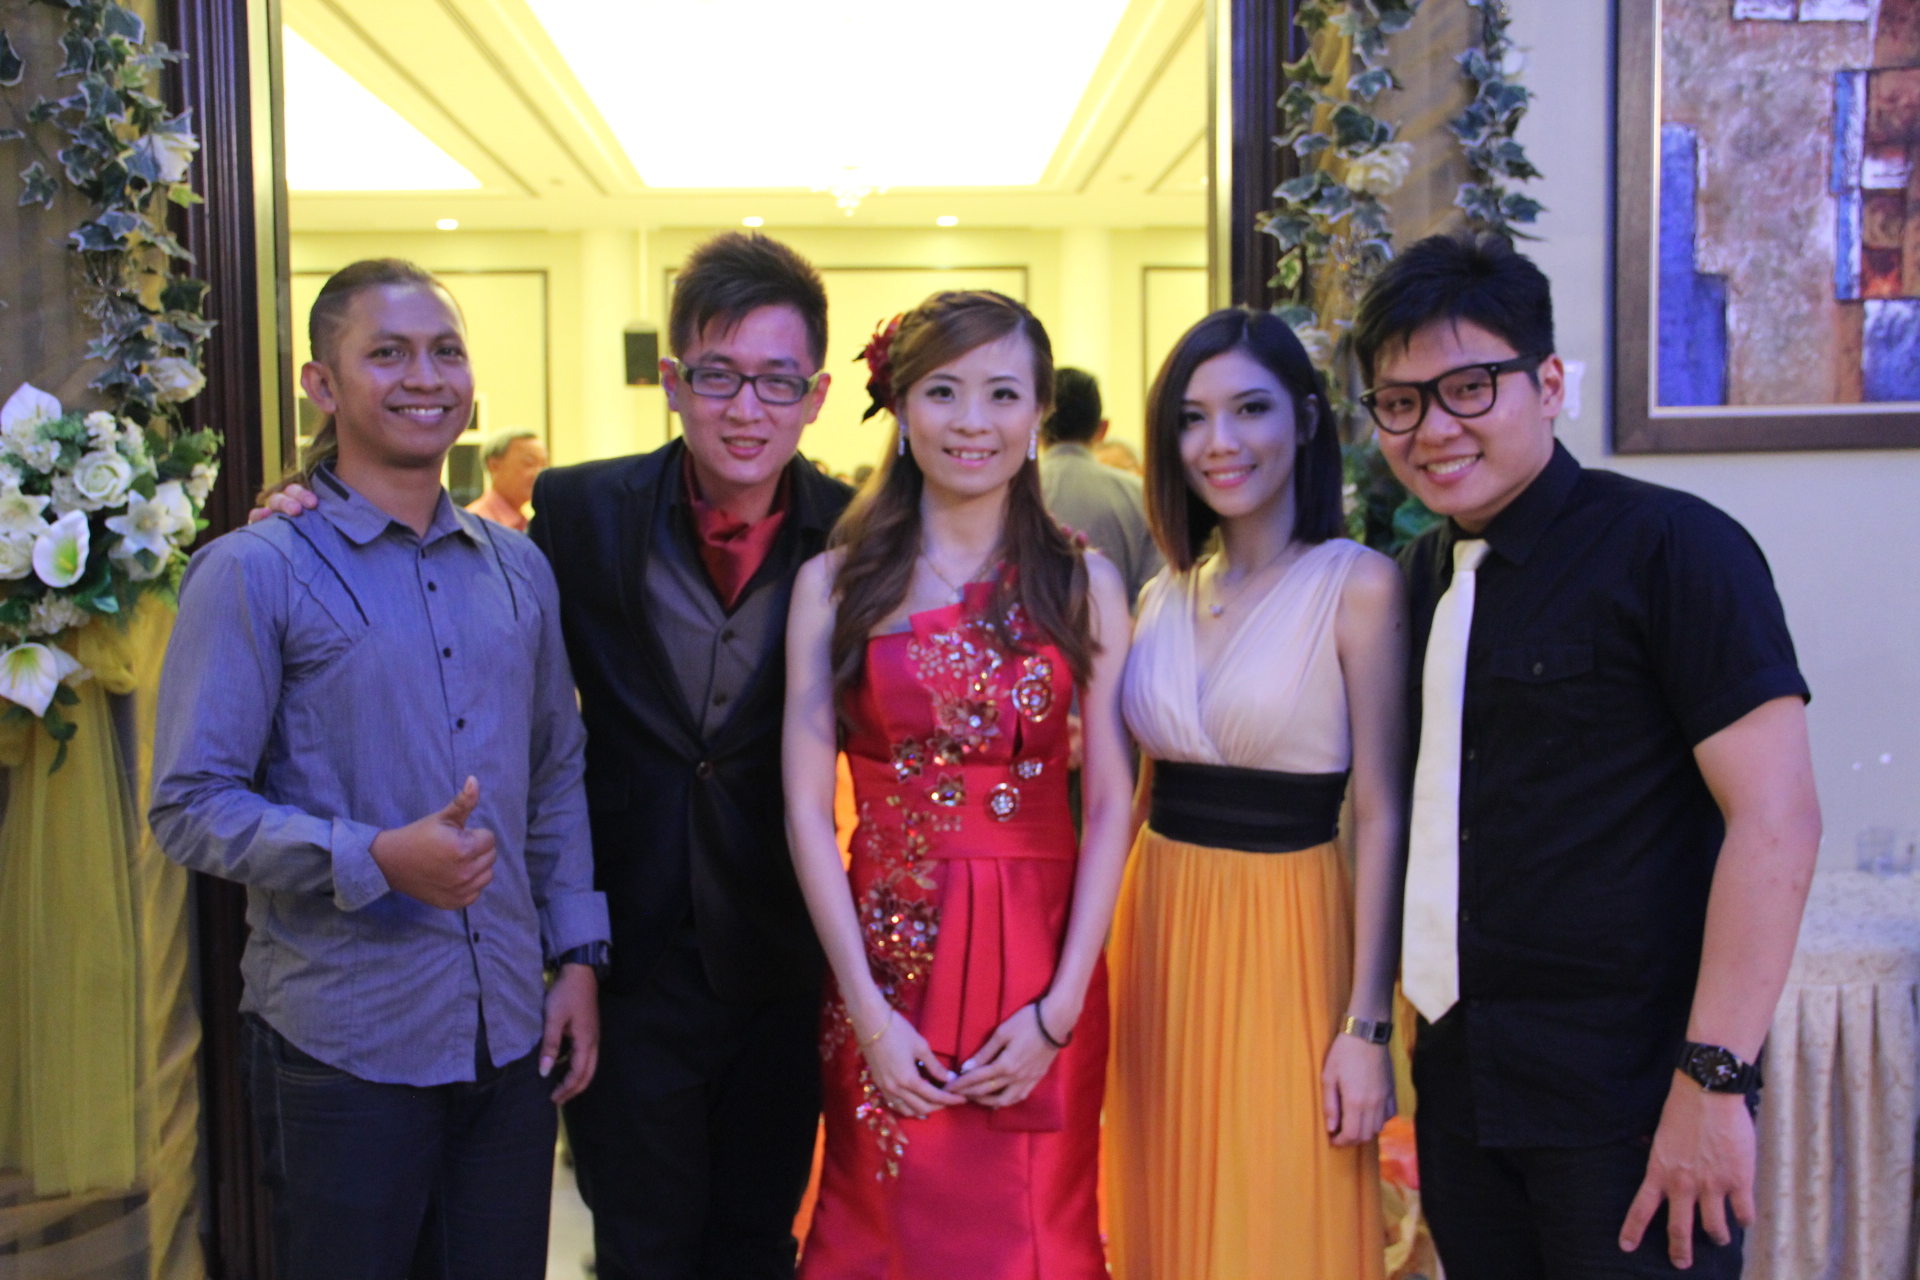 Poh Khim and Kristy’s wedding (21st September 2013)